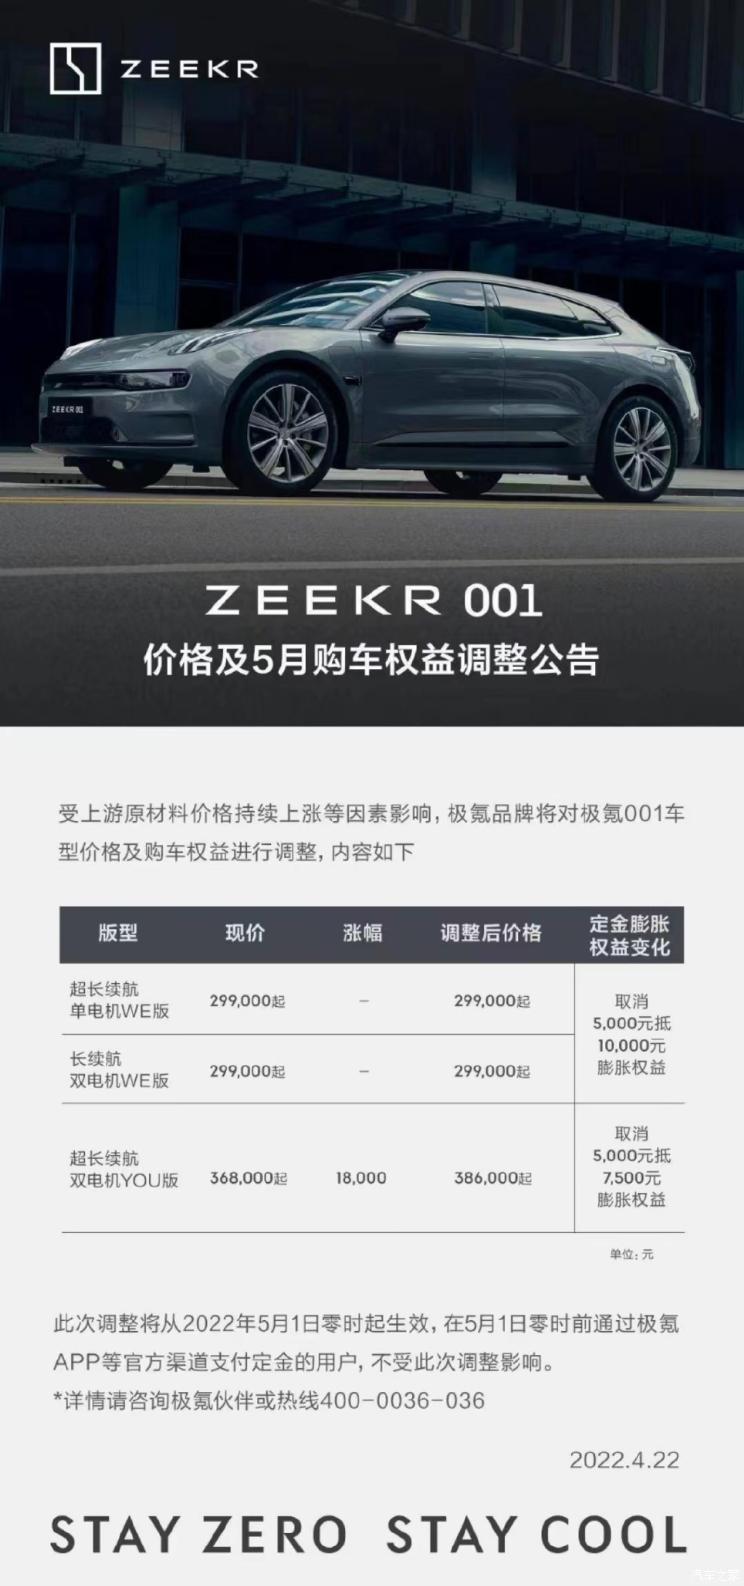 5月1日零时起ZEEKR001将迎来官方调价